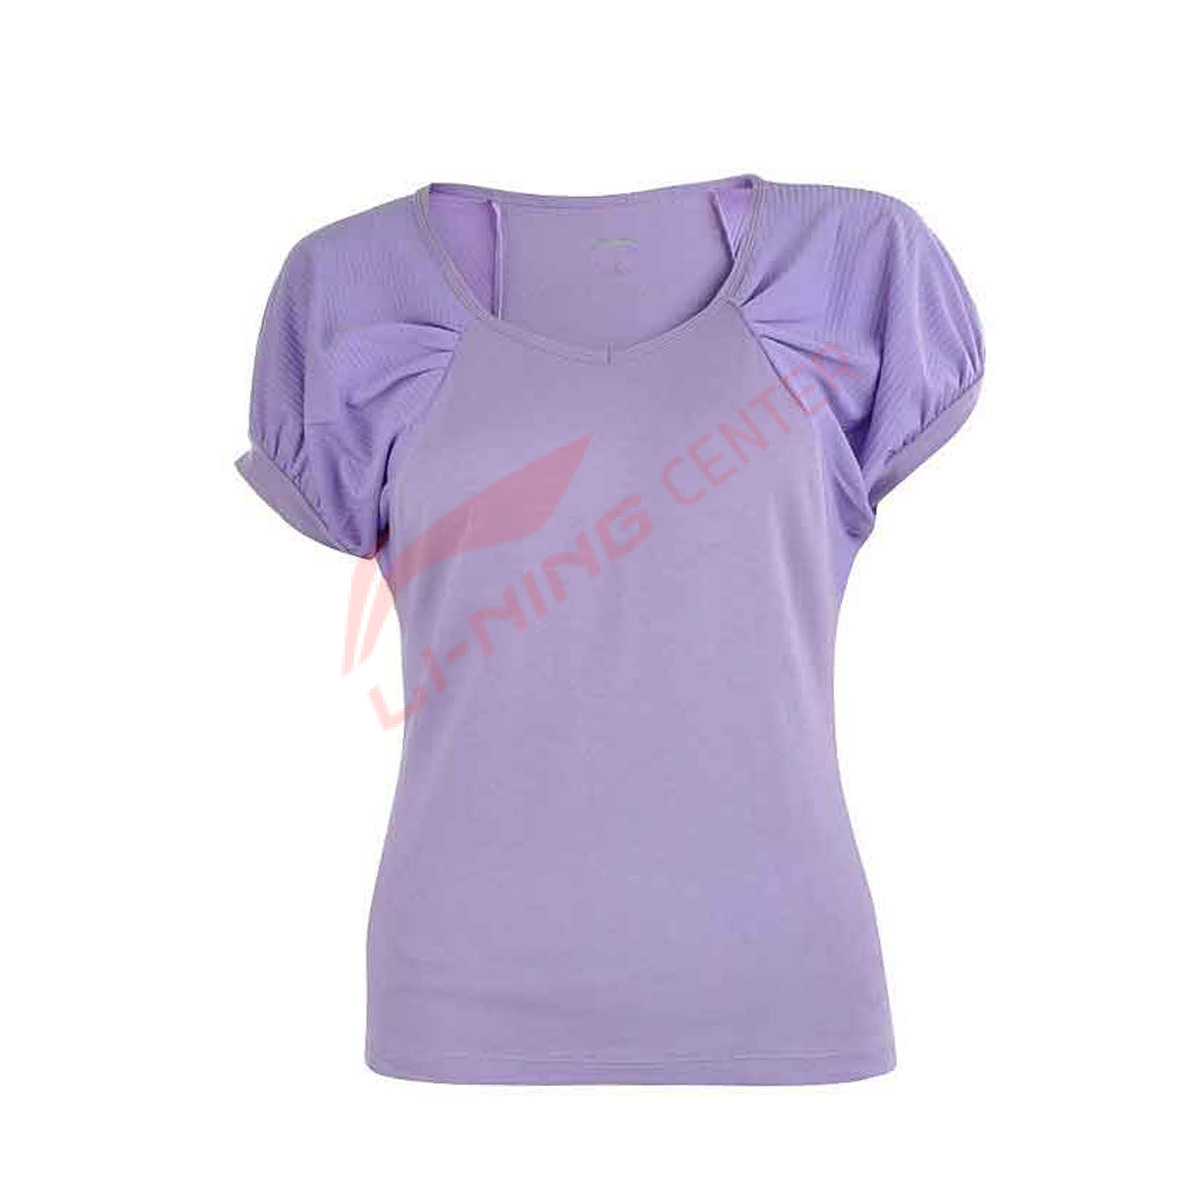 Женская футболка LI-NING ATSH082-1 (размеры: L, XL)